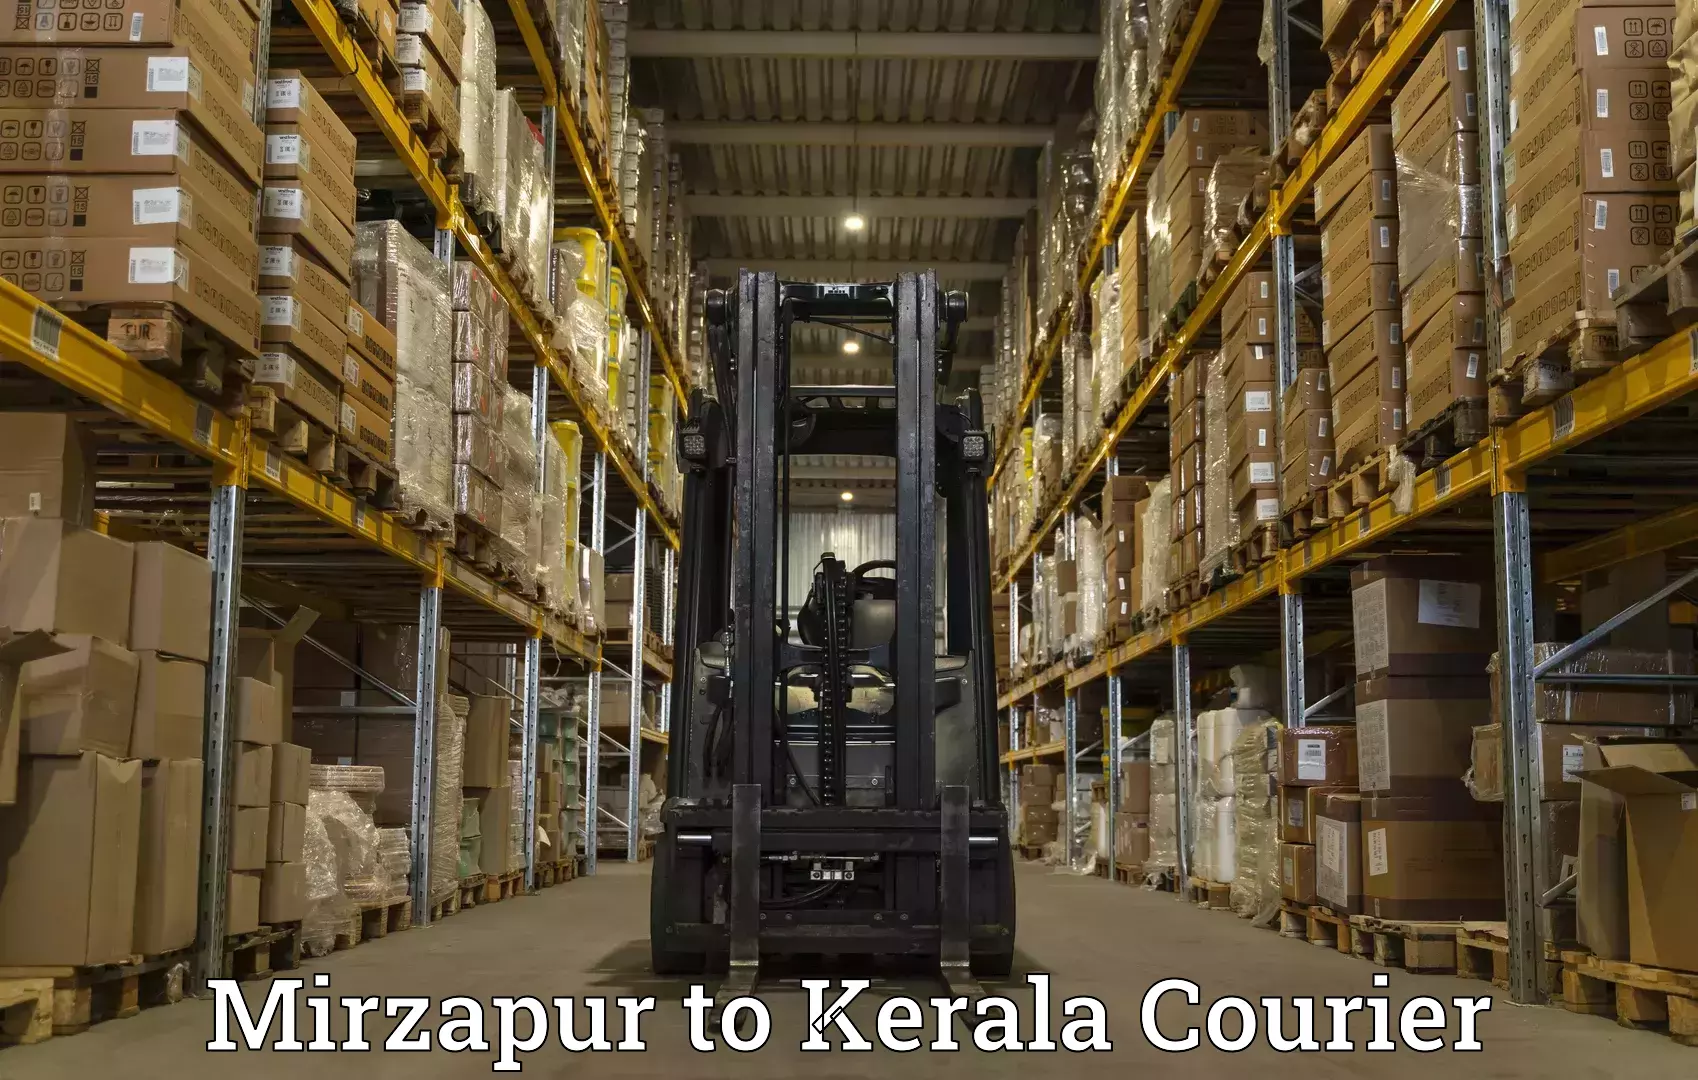 High-performance logistics in Mirzapur to Kiliyanthara